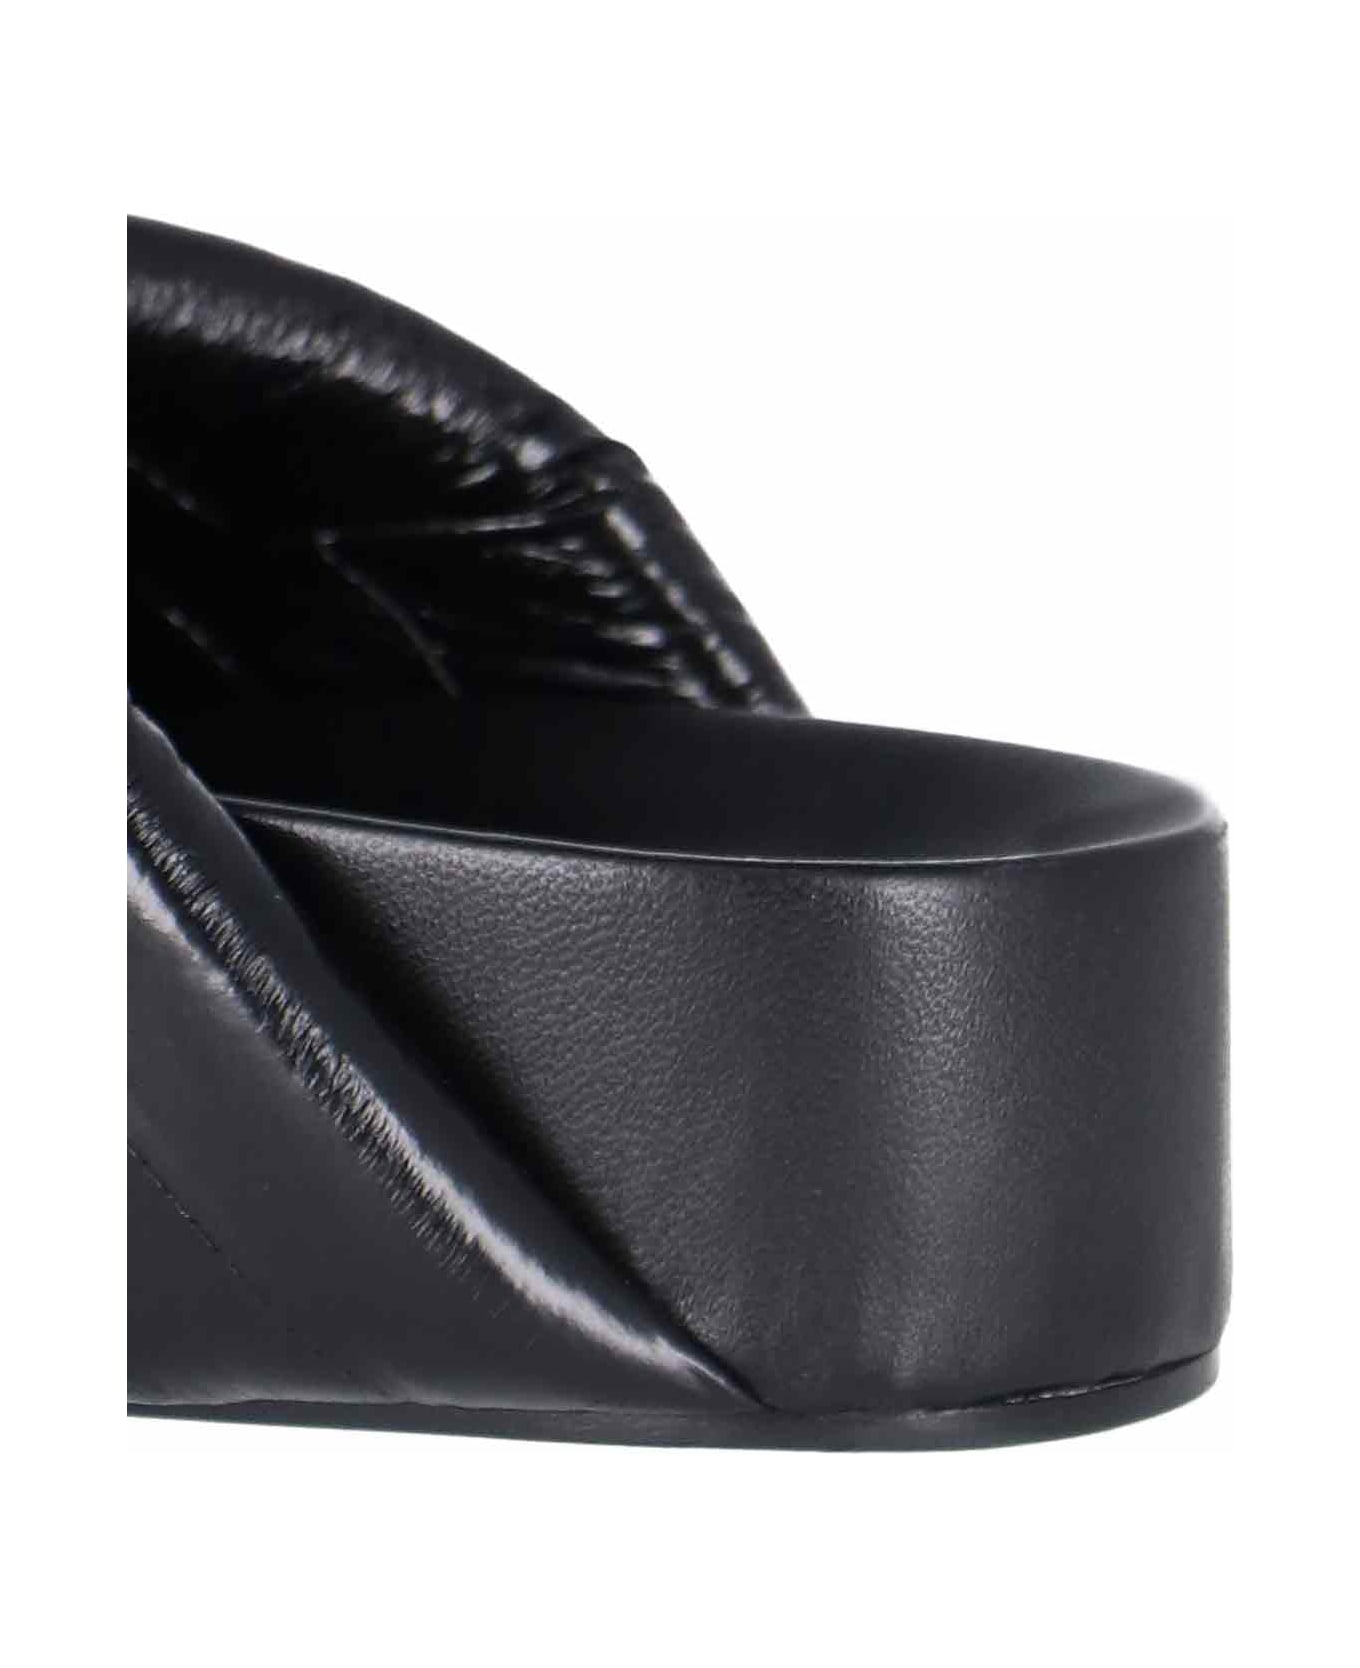 Jil Sander Crossed Sandals - BLACK フラットシューズ